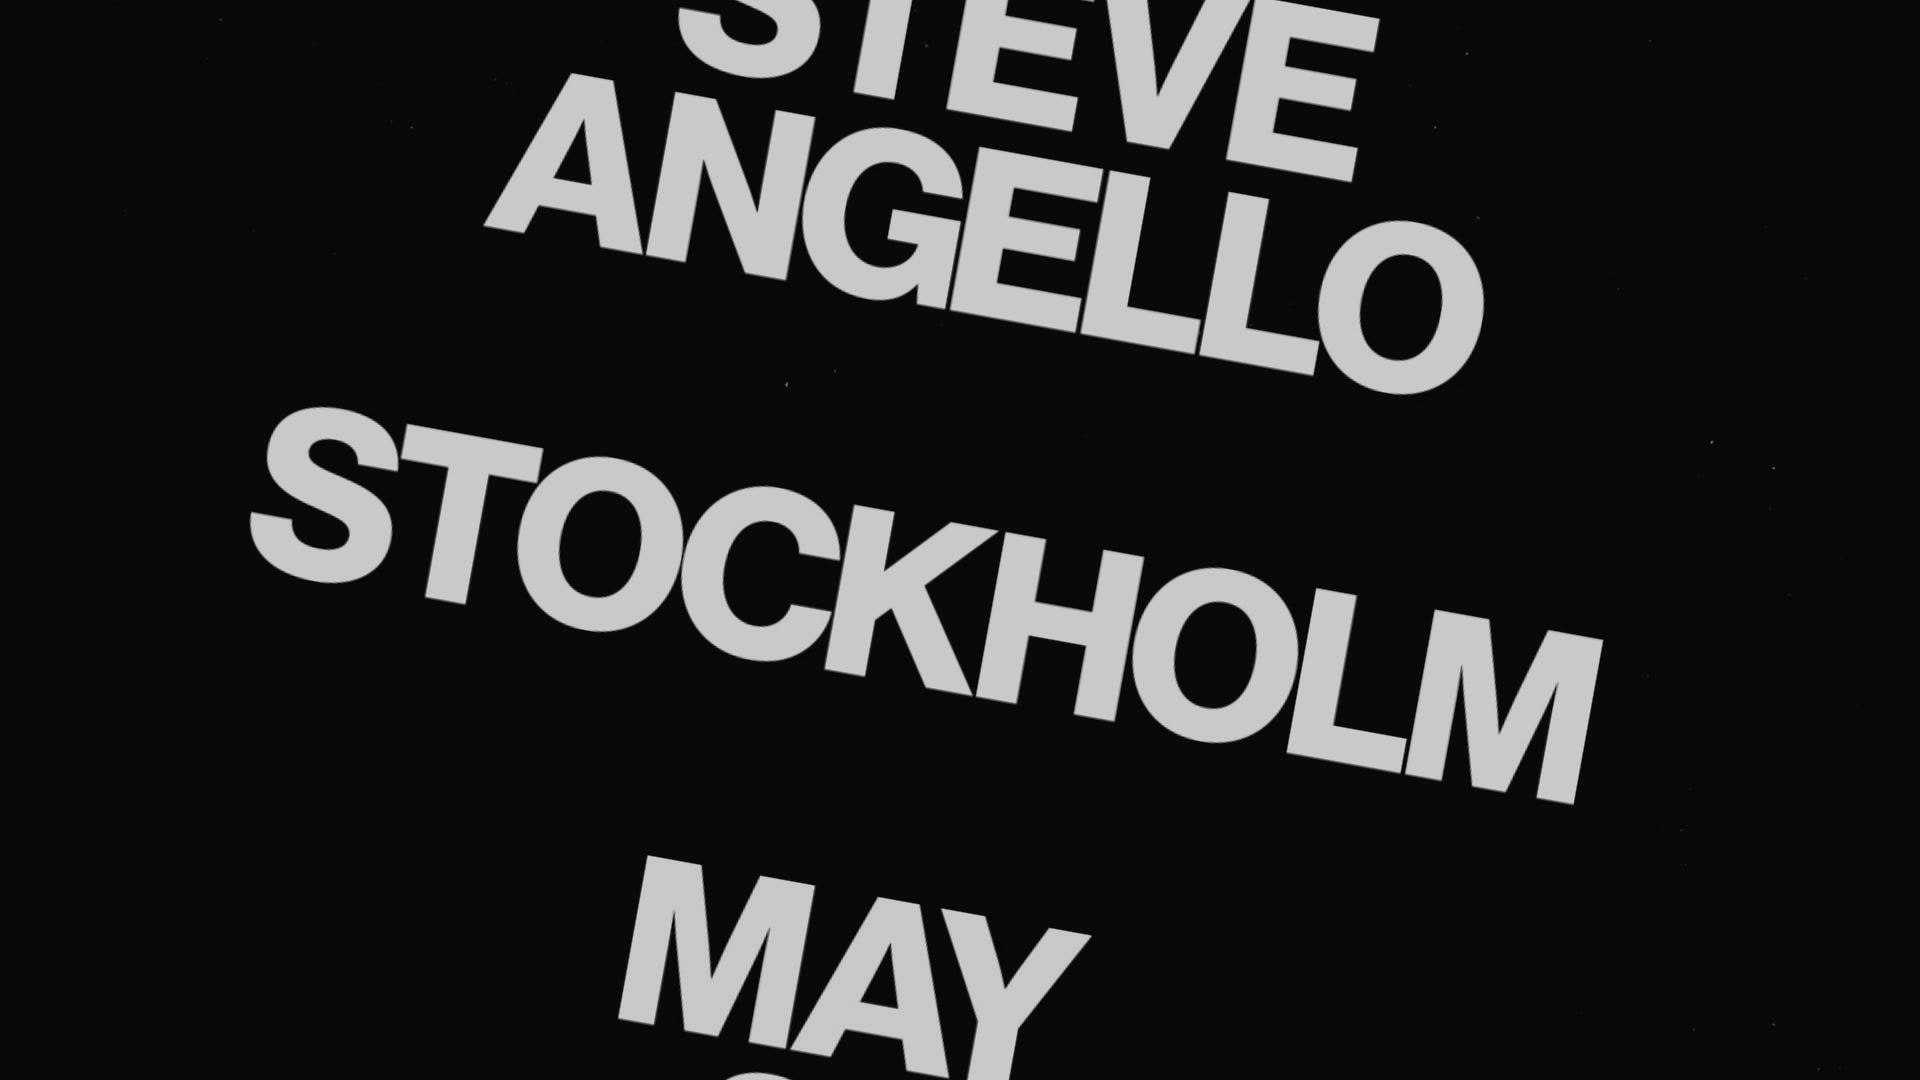 Steve Angello spelar i Stockholm – första solospelningen sedan 2014